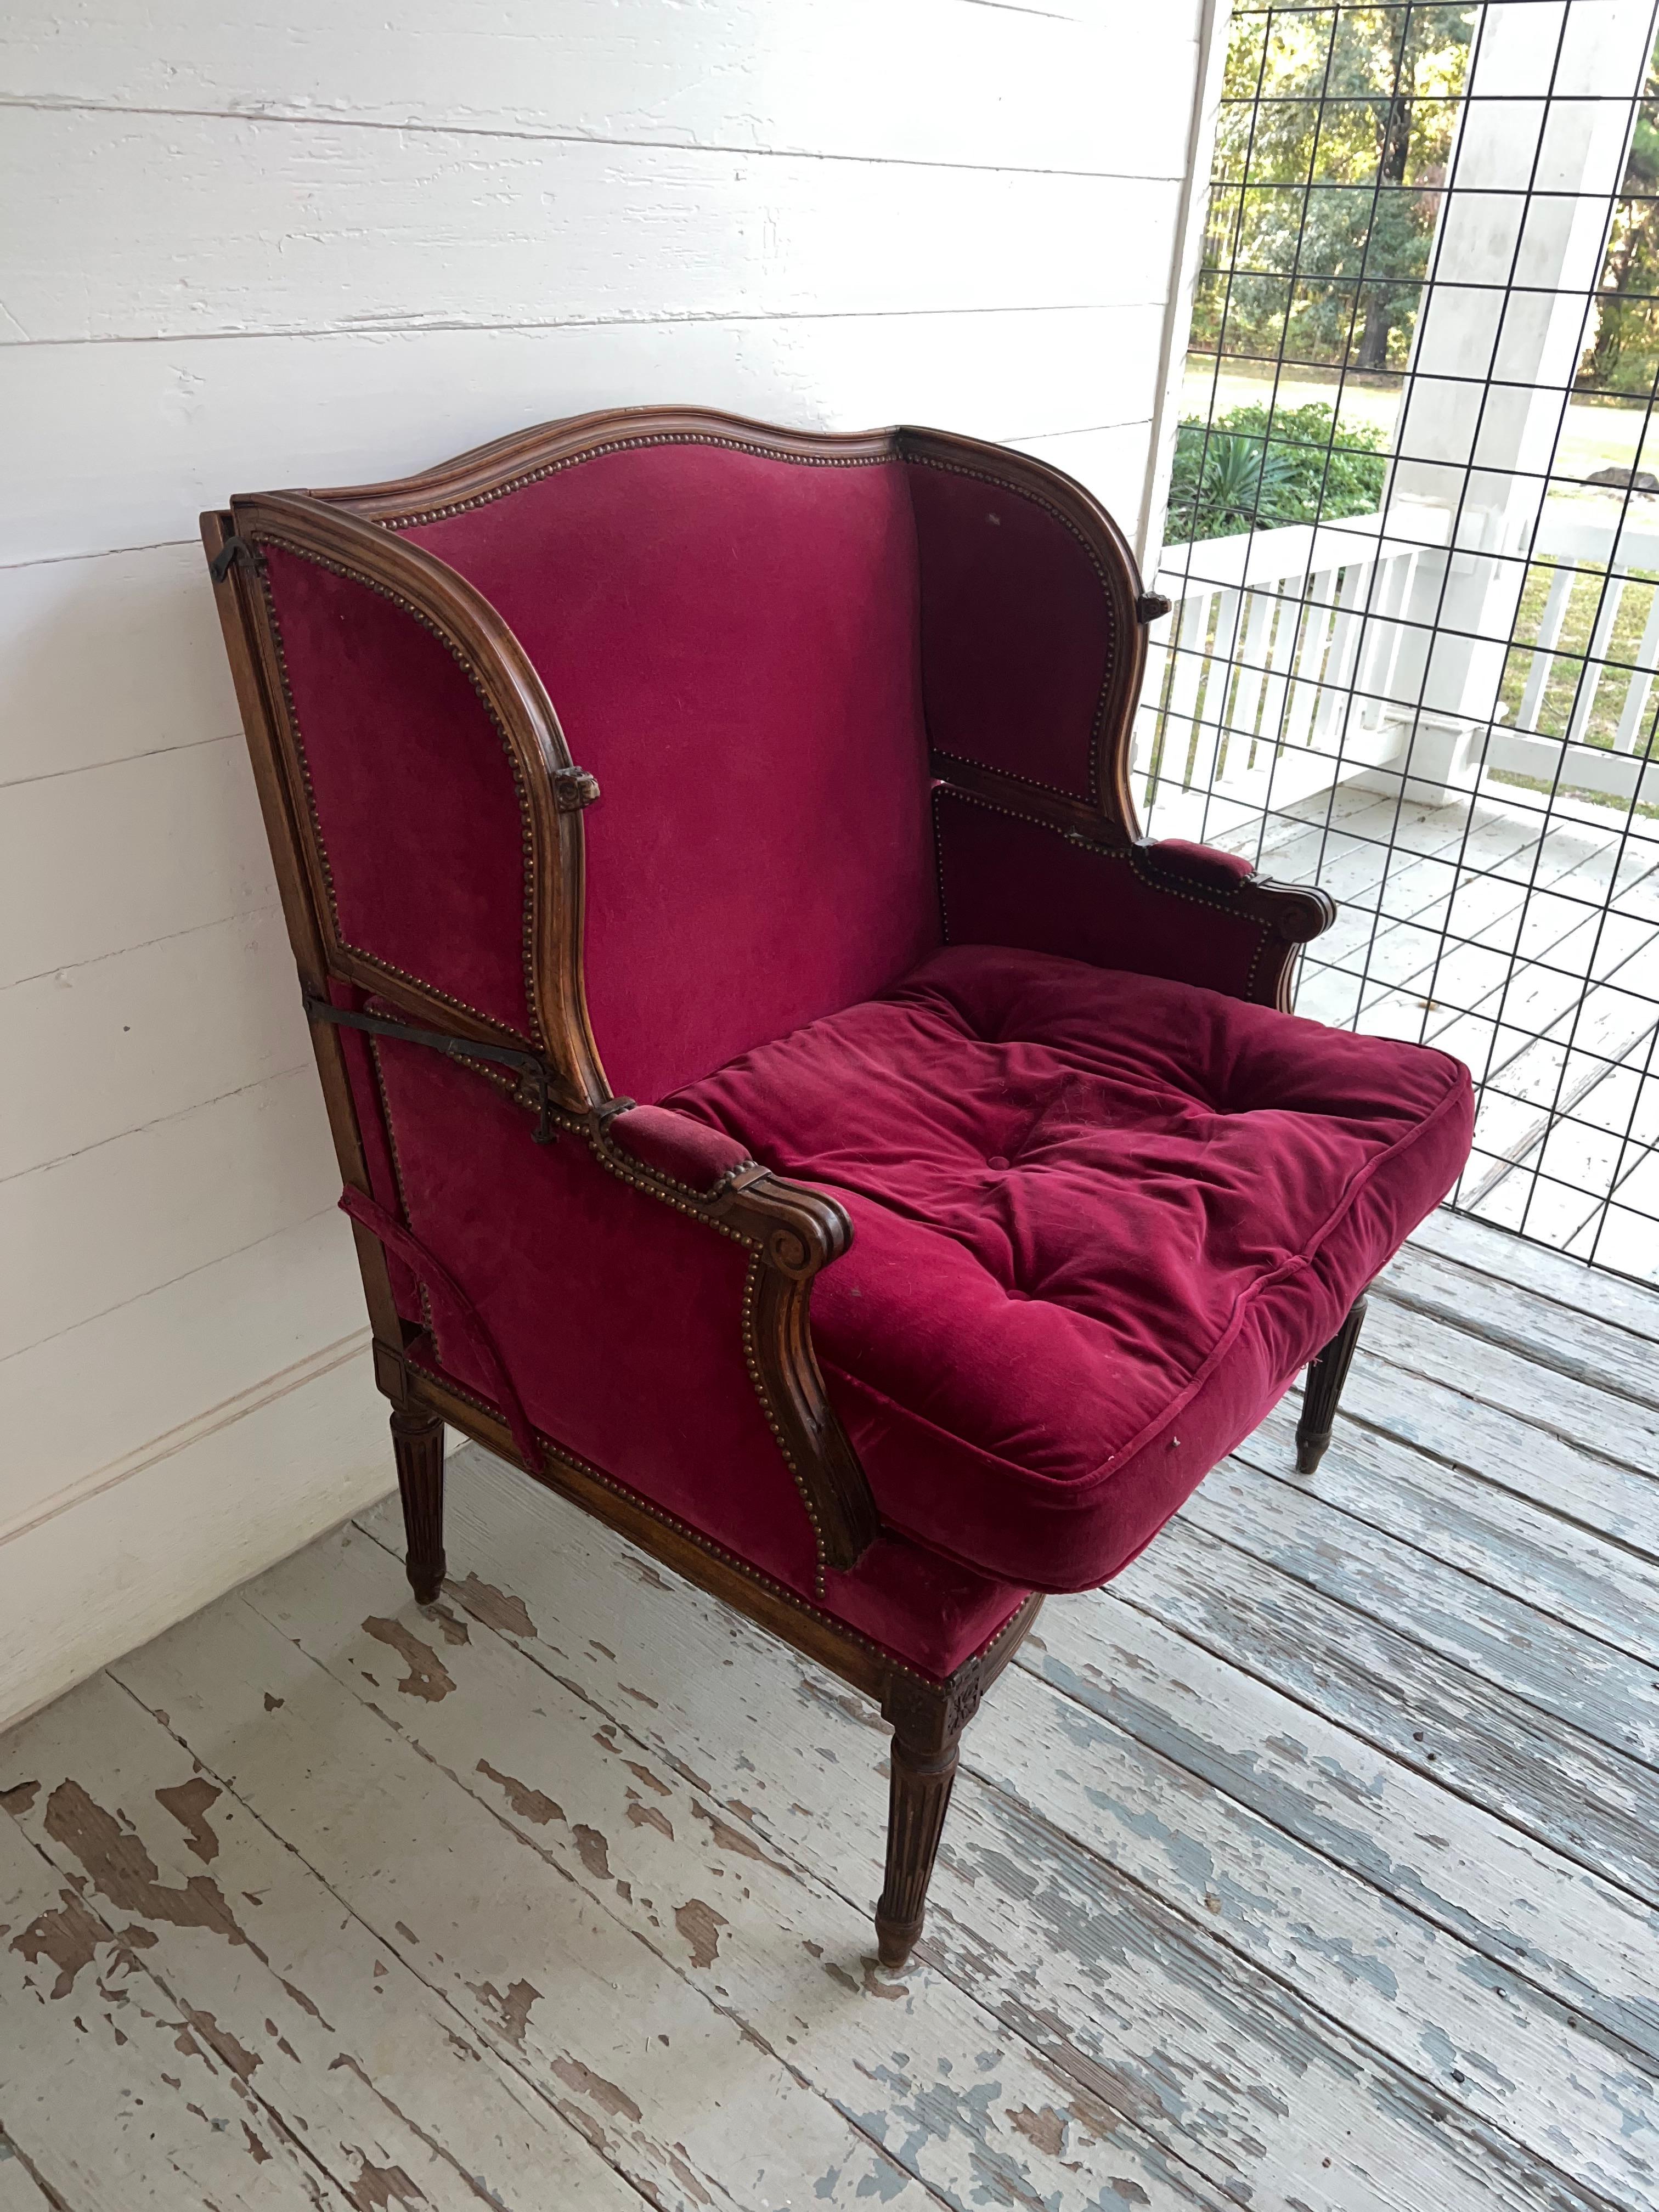 Bergère métamorphique en noyer sculpté du XIXe siècle, fauteuil qui se replie facilement en lit. Cette chaise très décorative est merveilleuse à regarder, assez grande pour qu'une personne de grande taille puisse l'utiliser confortablement et est